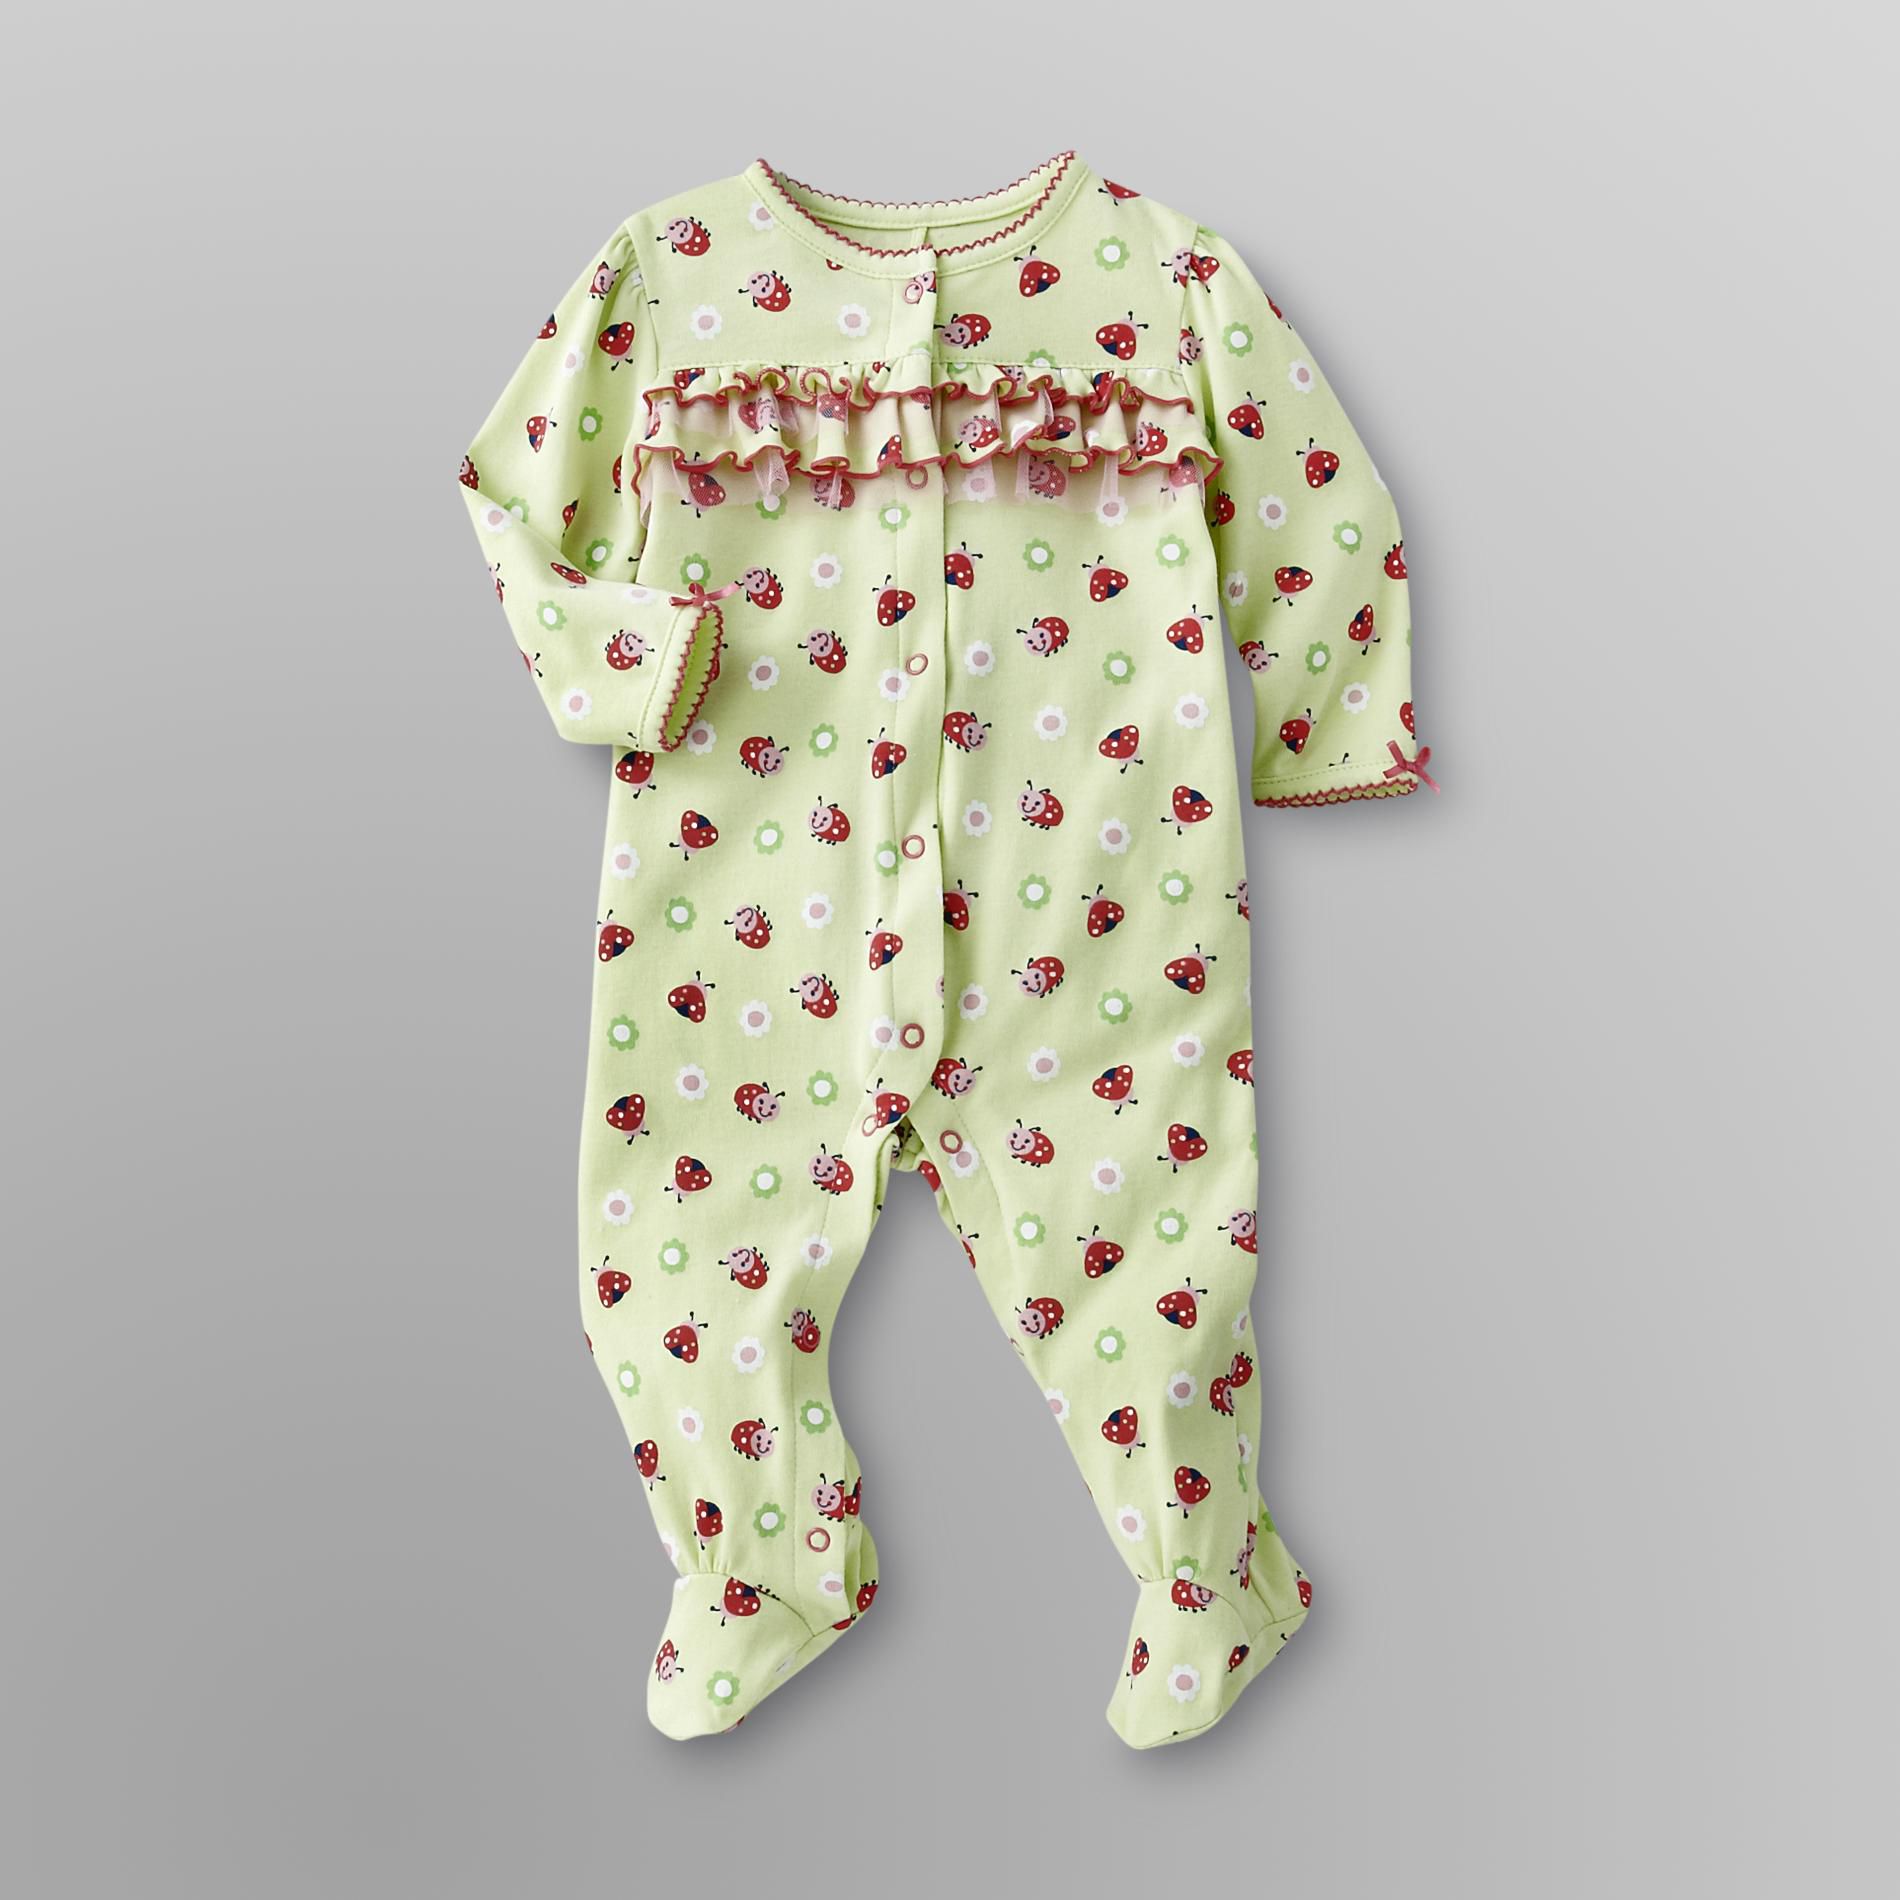 Little Wonders Infant Girl's Sleeper Pajamas - Ladybugs